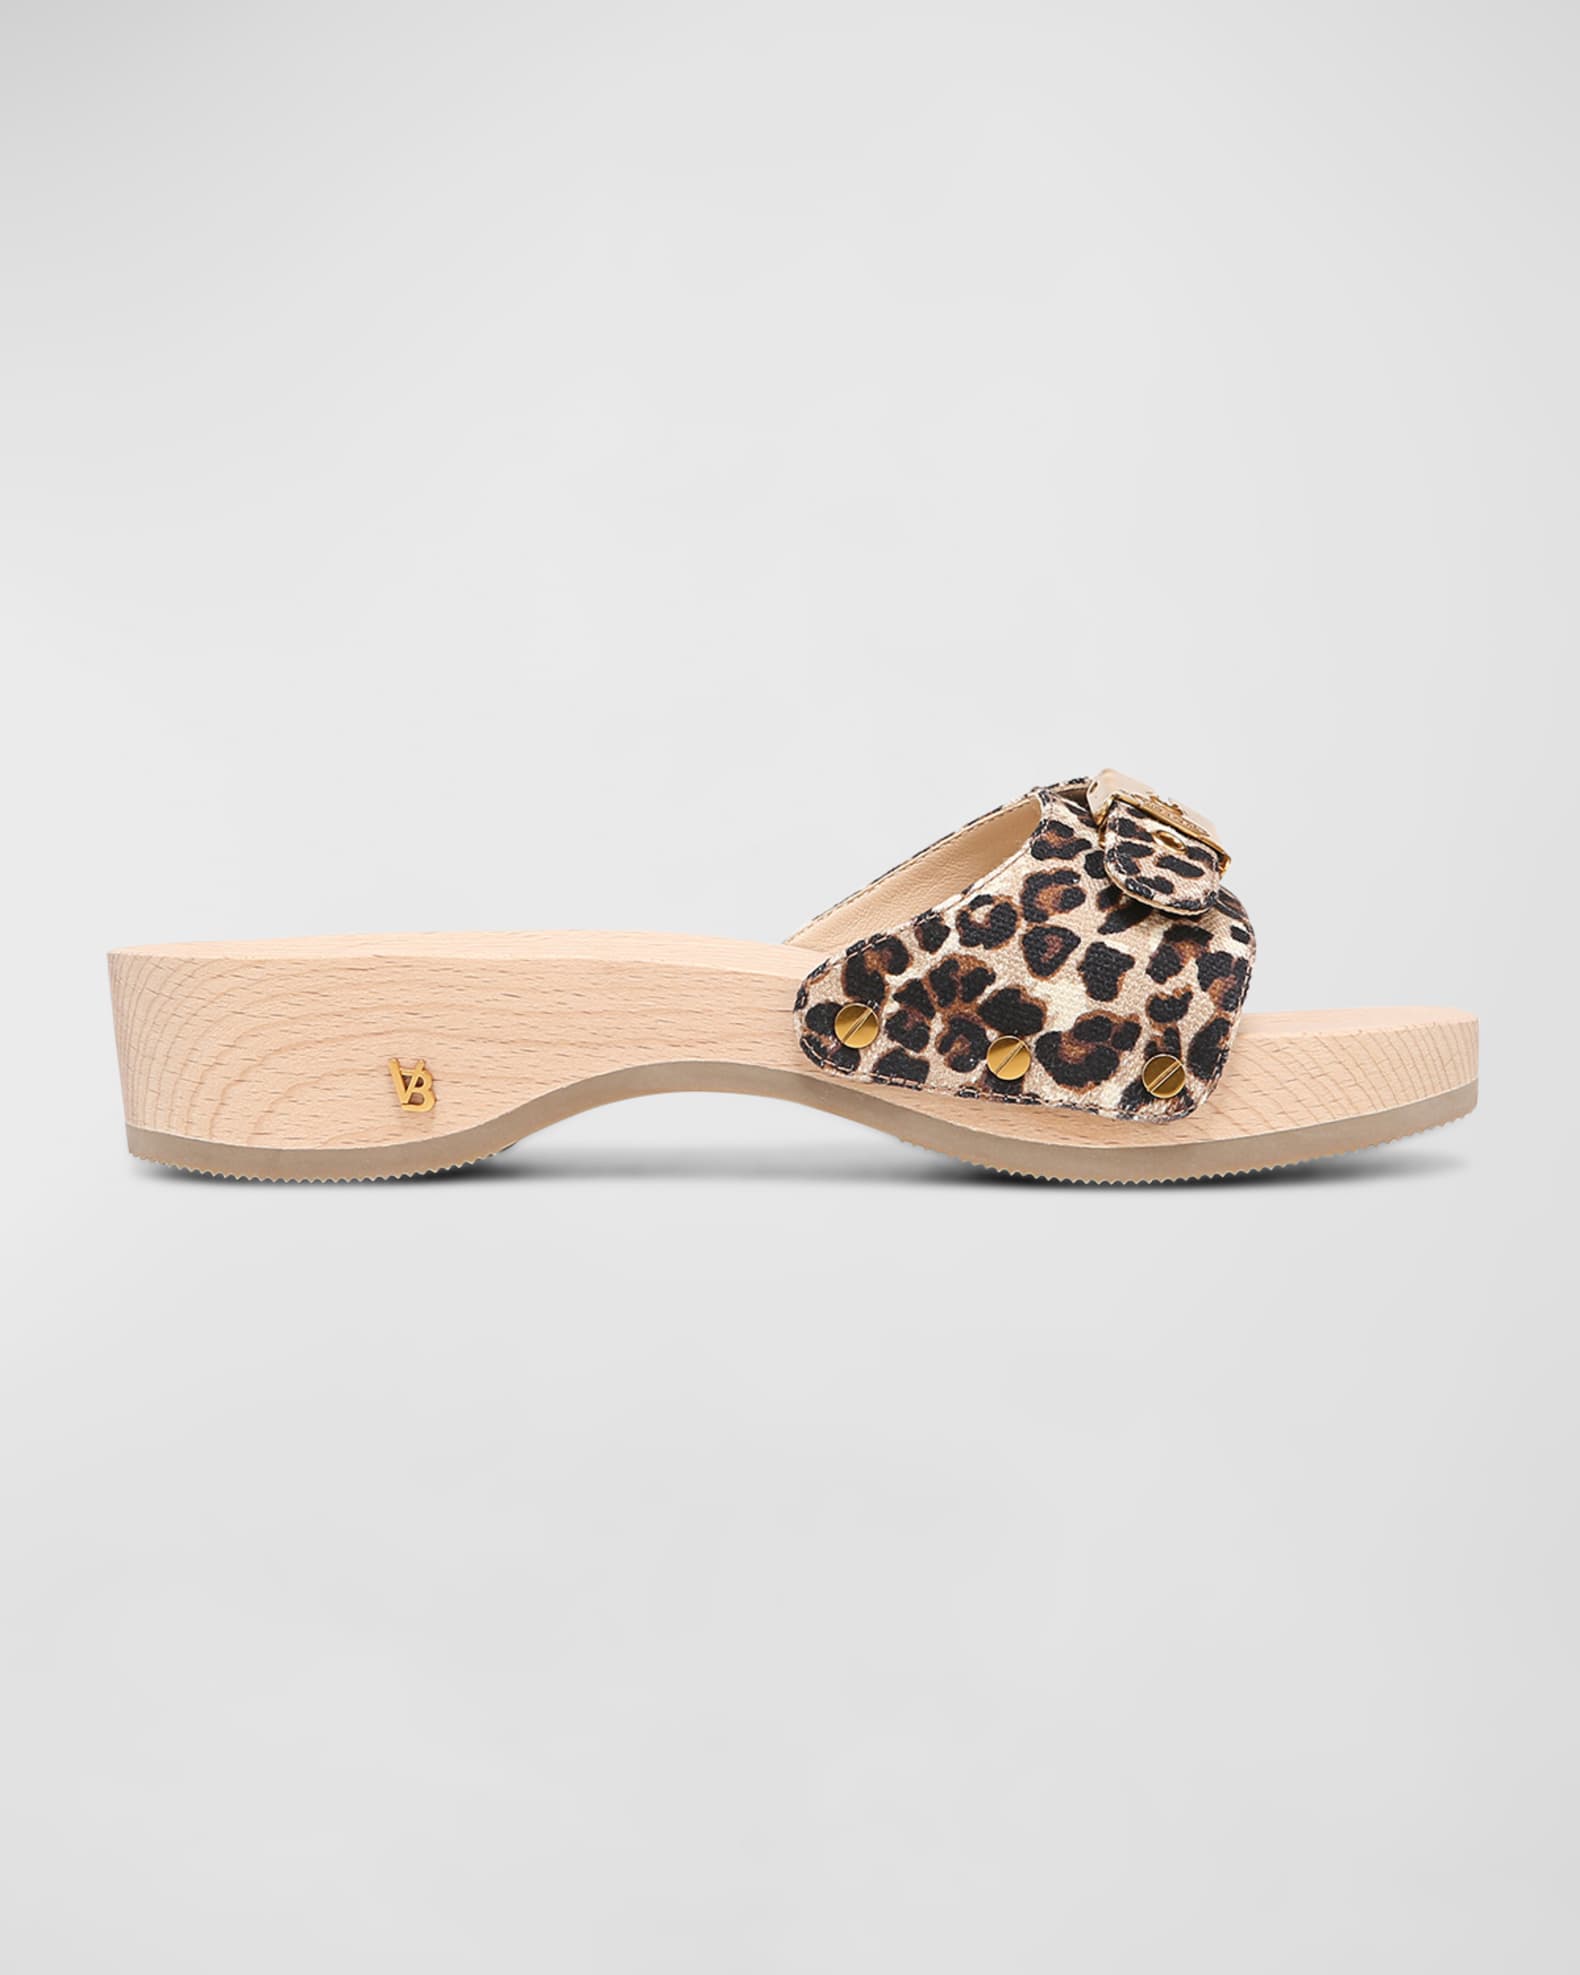 Veronica Beard x Dr Scholl’s Original Leopard Buckle Clog Sandals ...